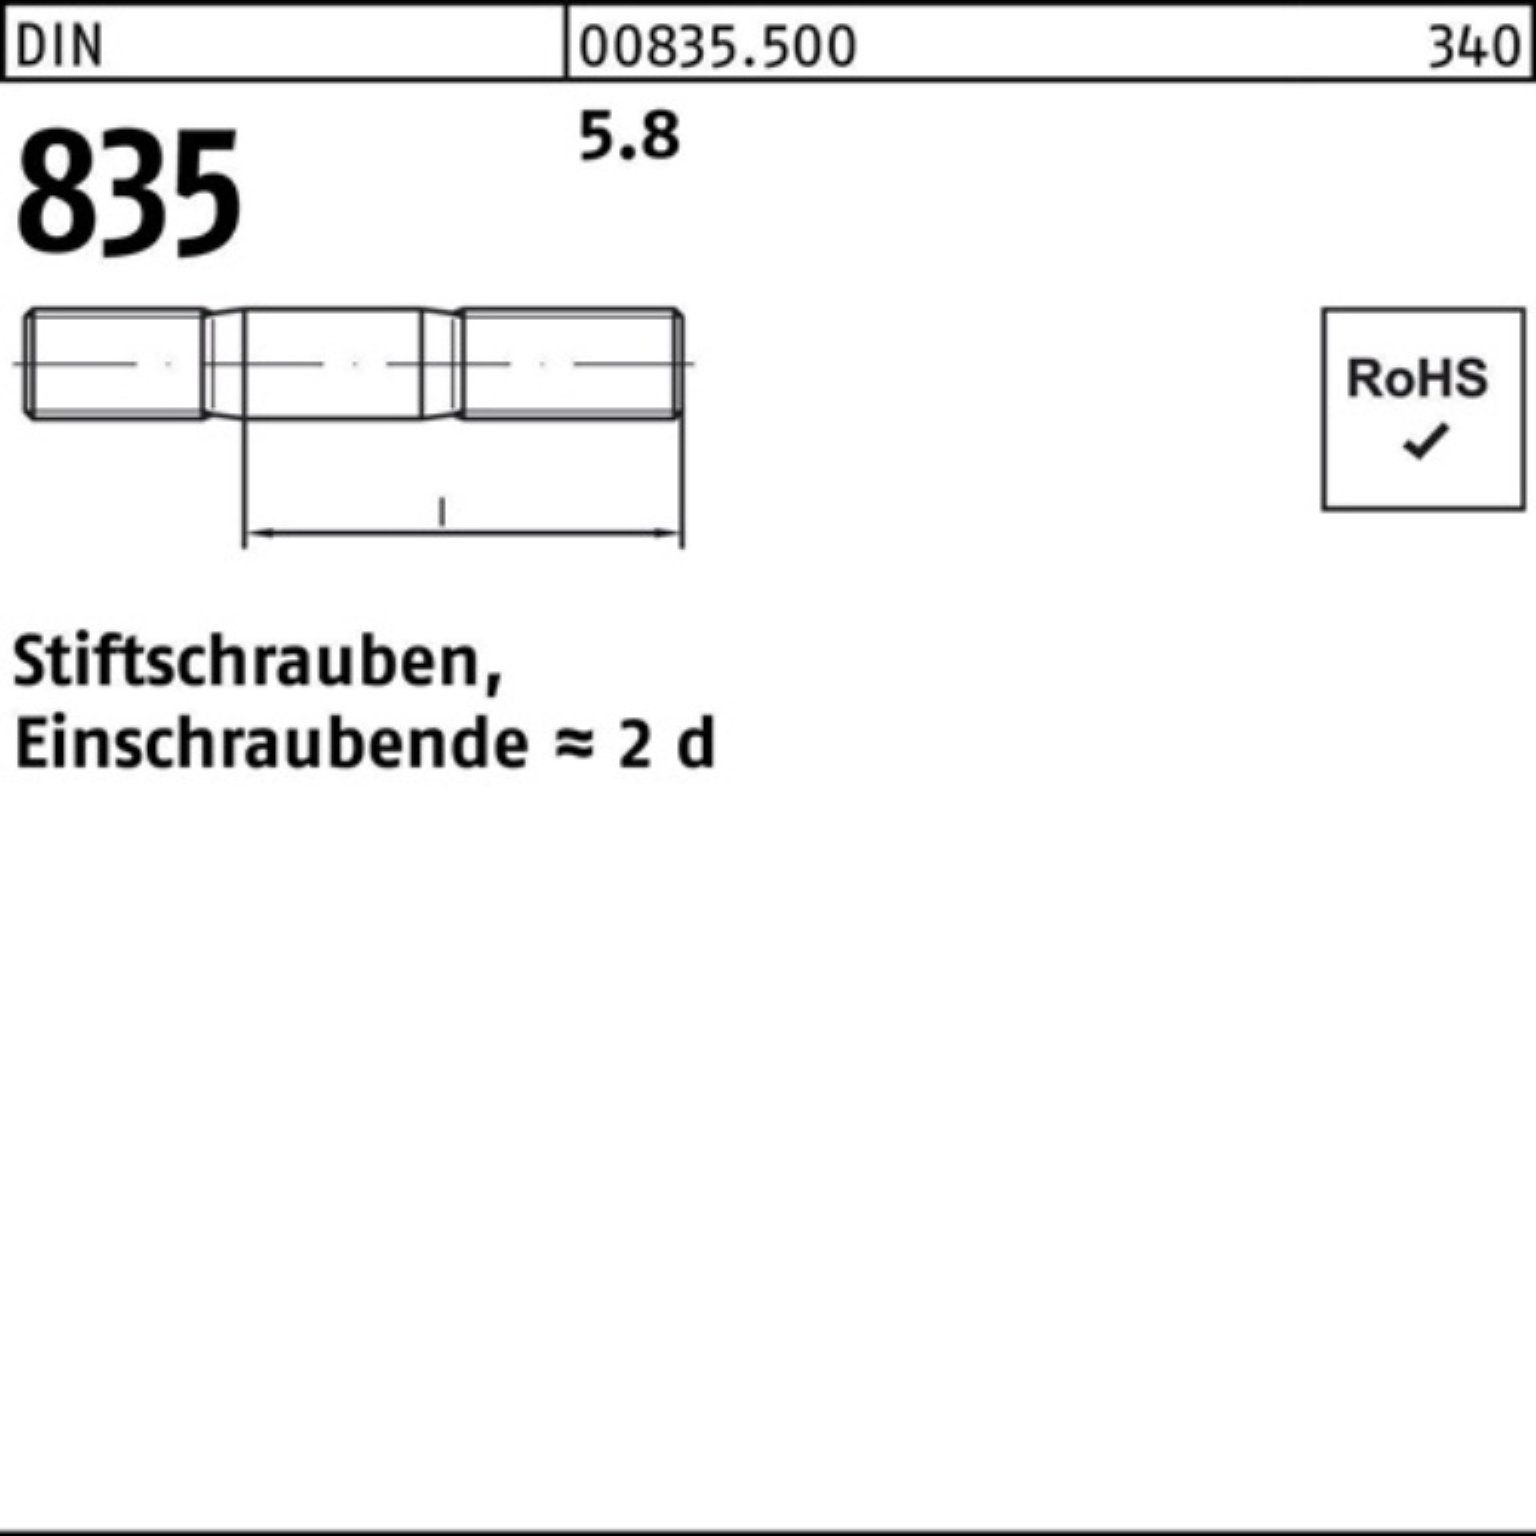 Reyher 20 Stiftschraube 5.8 DIN Stiftschraube Stü Pack 835 100 100er M8x Einschraubende=2d